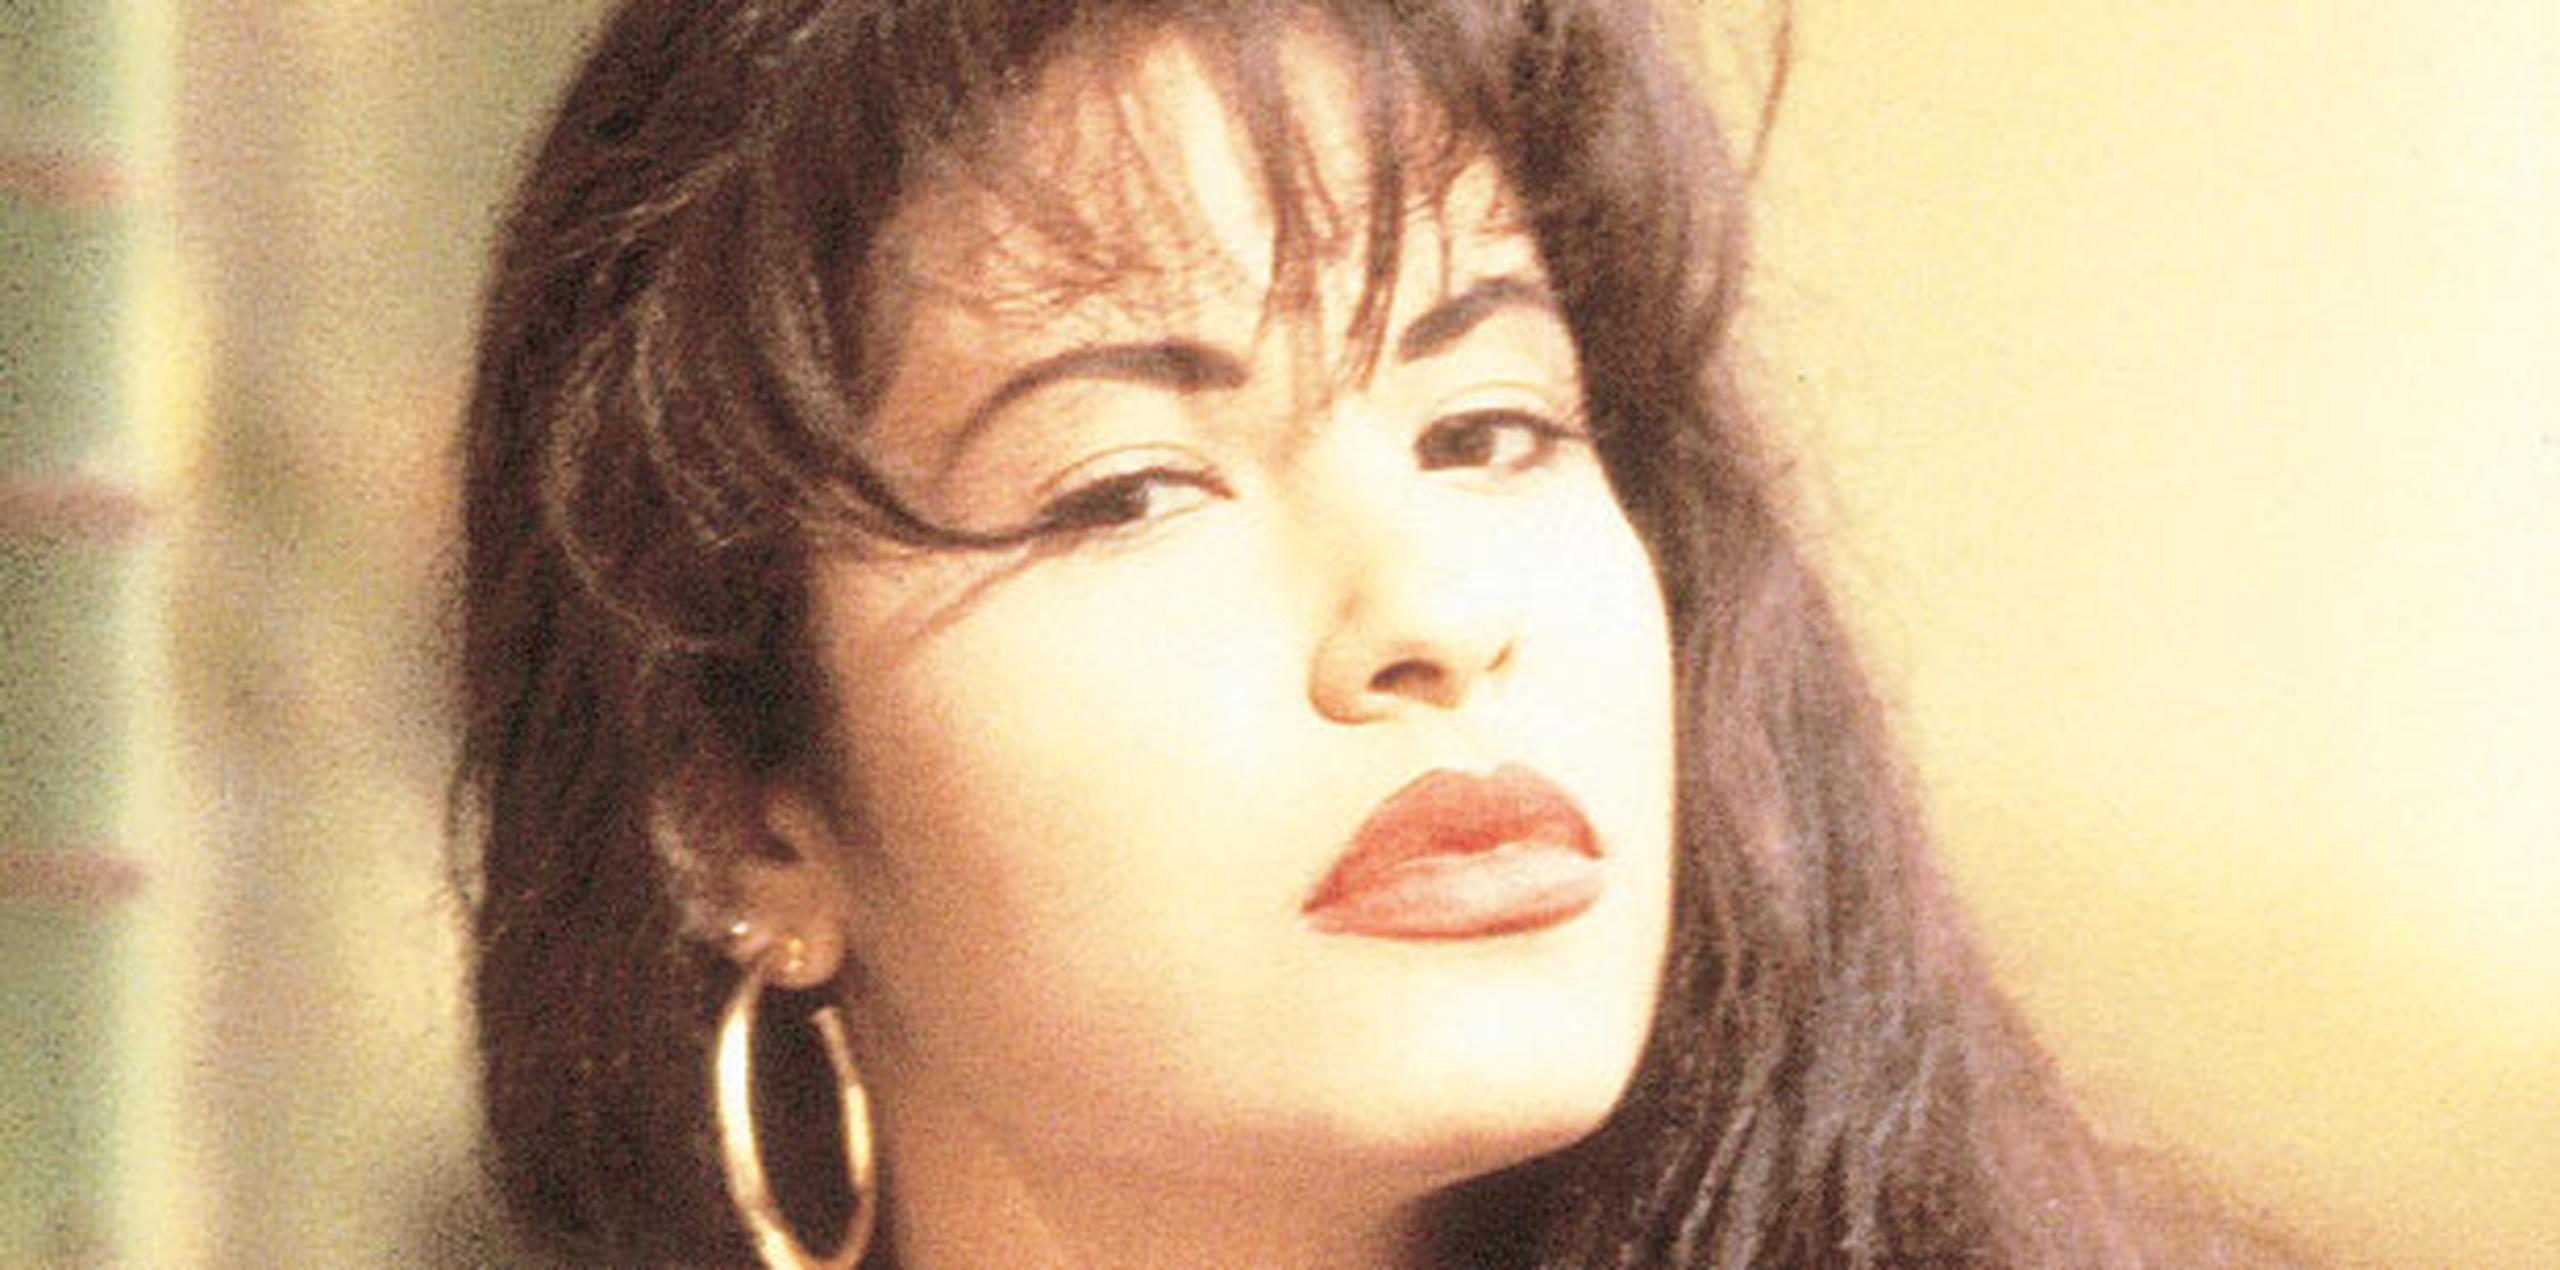 Conocida sencillamente como Selena, la cantante y compositora tejana derribó barreras para las mujeres en la música latina y allanó el camino para una nueva generación de artistas contemporáneas de ascendencia latinoamericana . (Archivo)